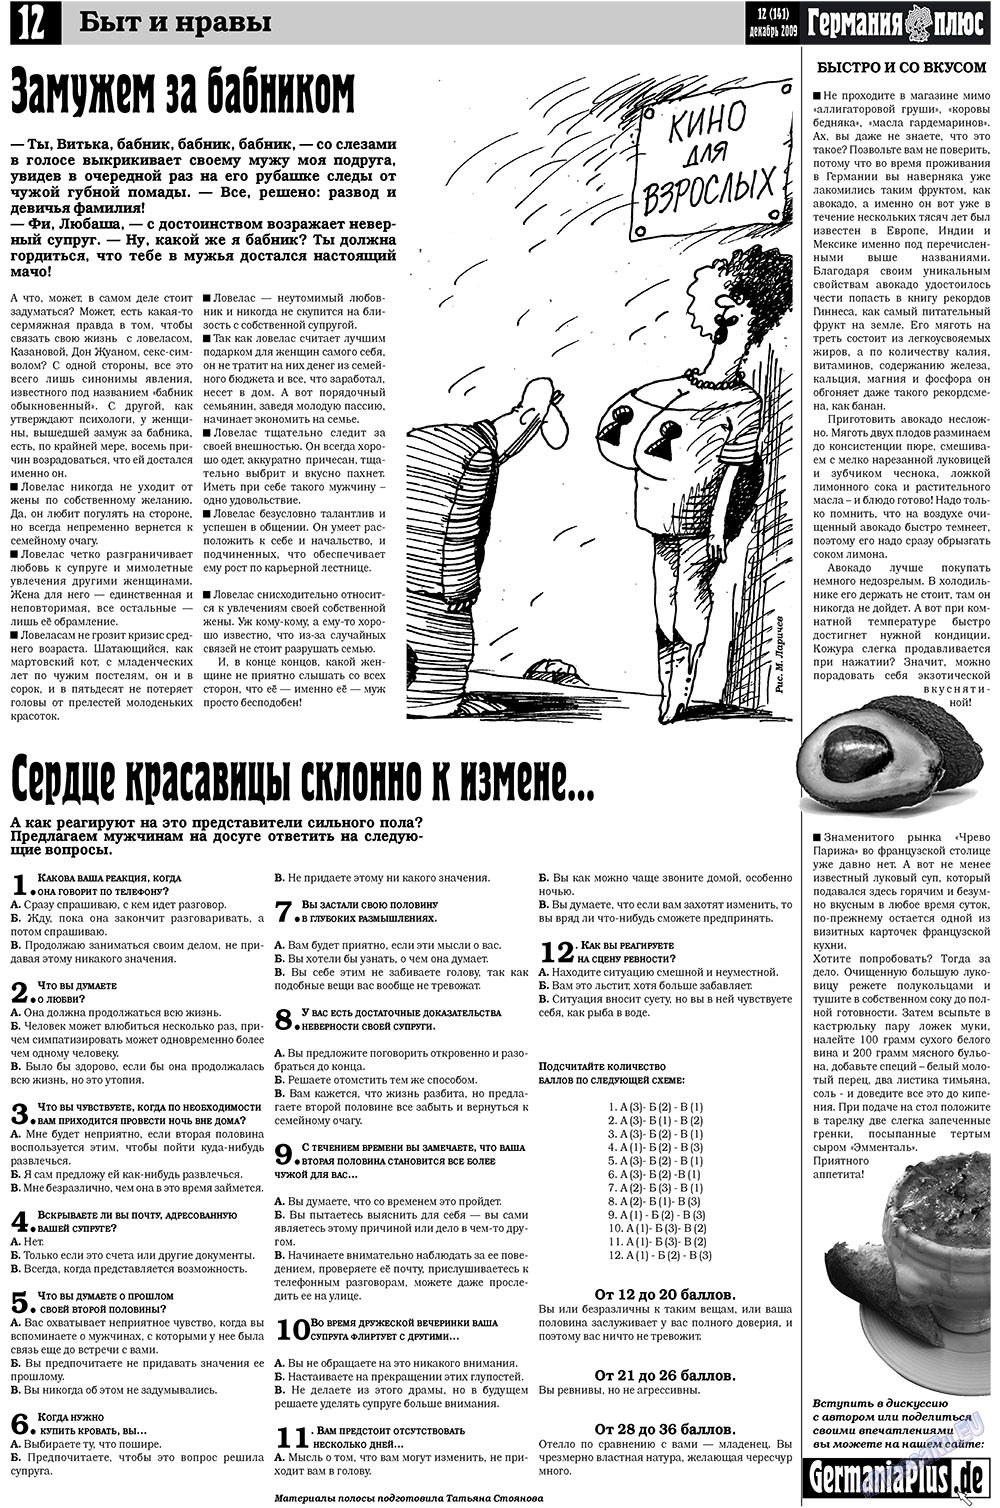 Германия плюс, газета. 2009 №12 стр.12